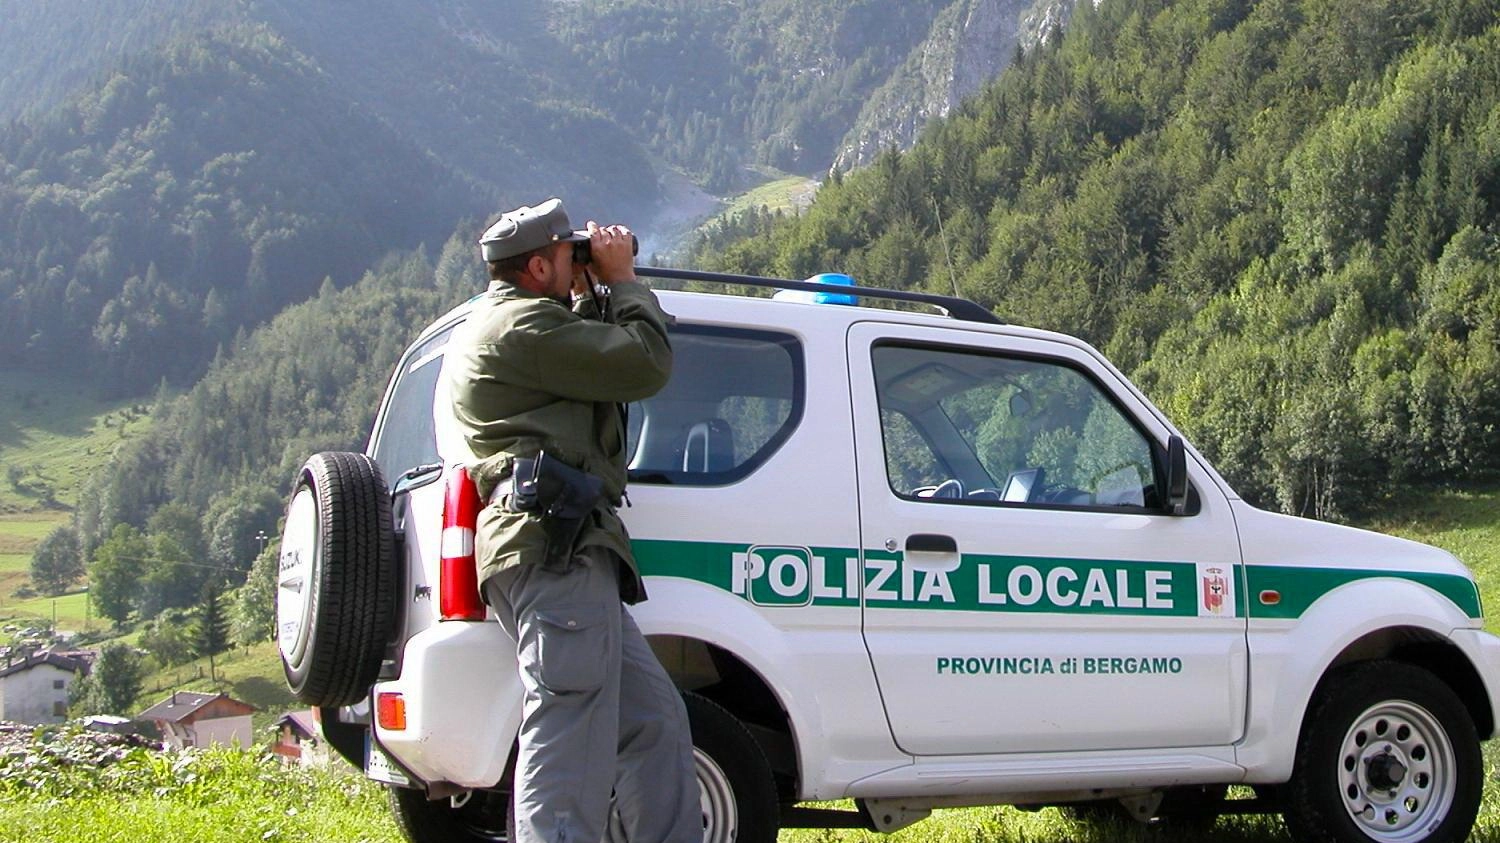 

Polizia provinciale Bergamo: servirebbero il triplo degli uomini in divisa